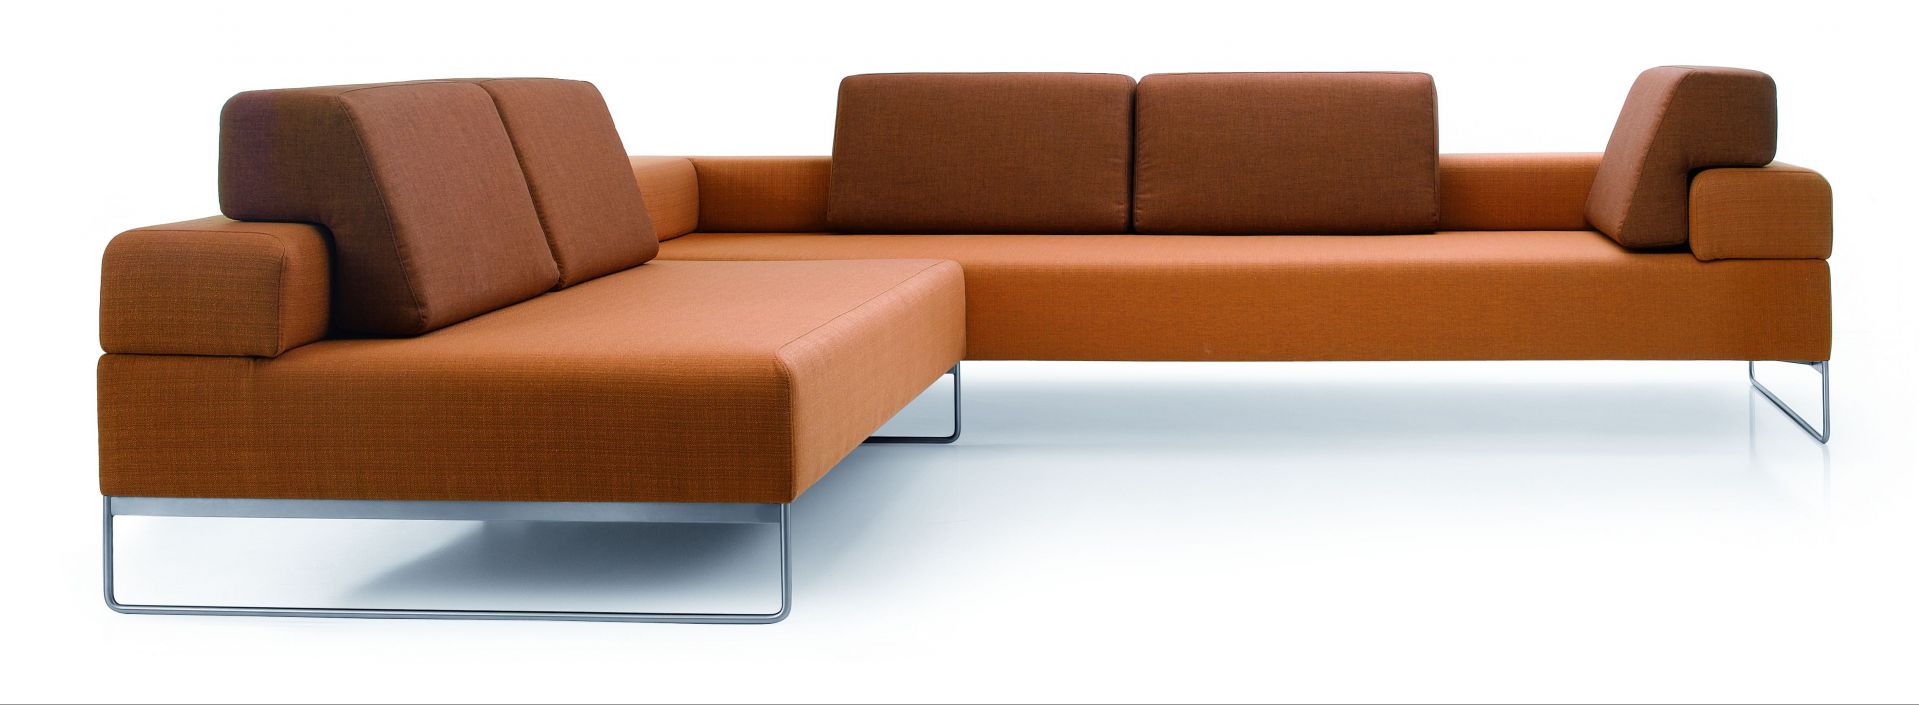 Sofa narożna „Rosco” marki Noti to minimalistyczny wygląd, który doskonale sprawdzi się we wnętrzach typu loft. Fot. Noti